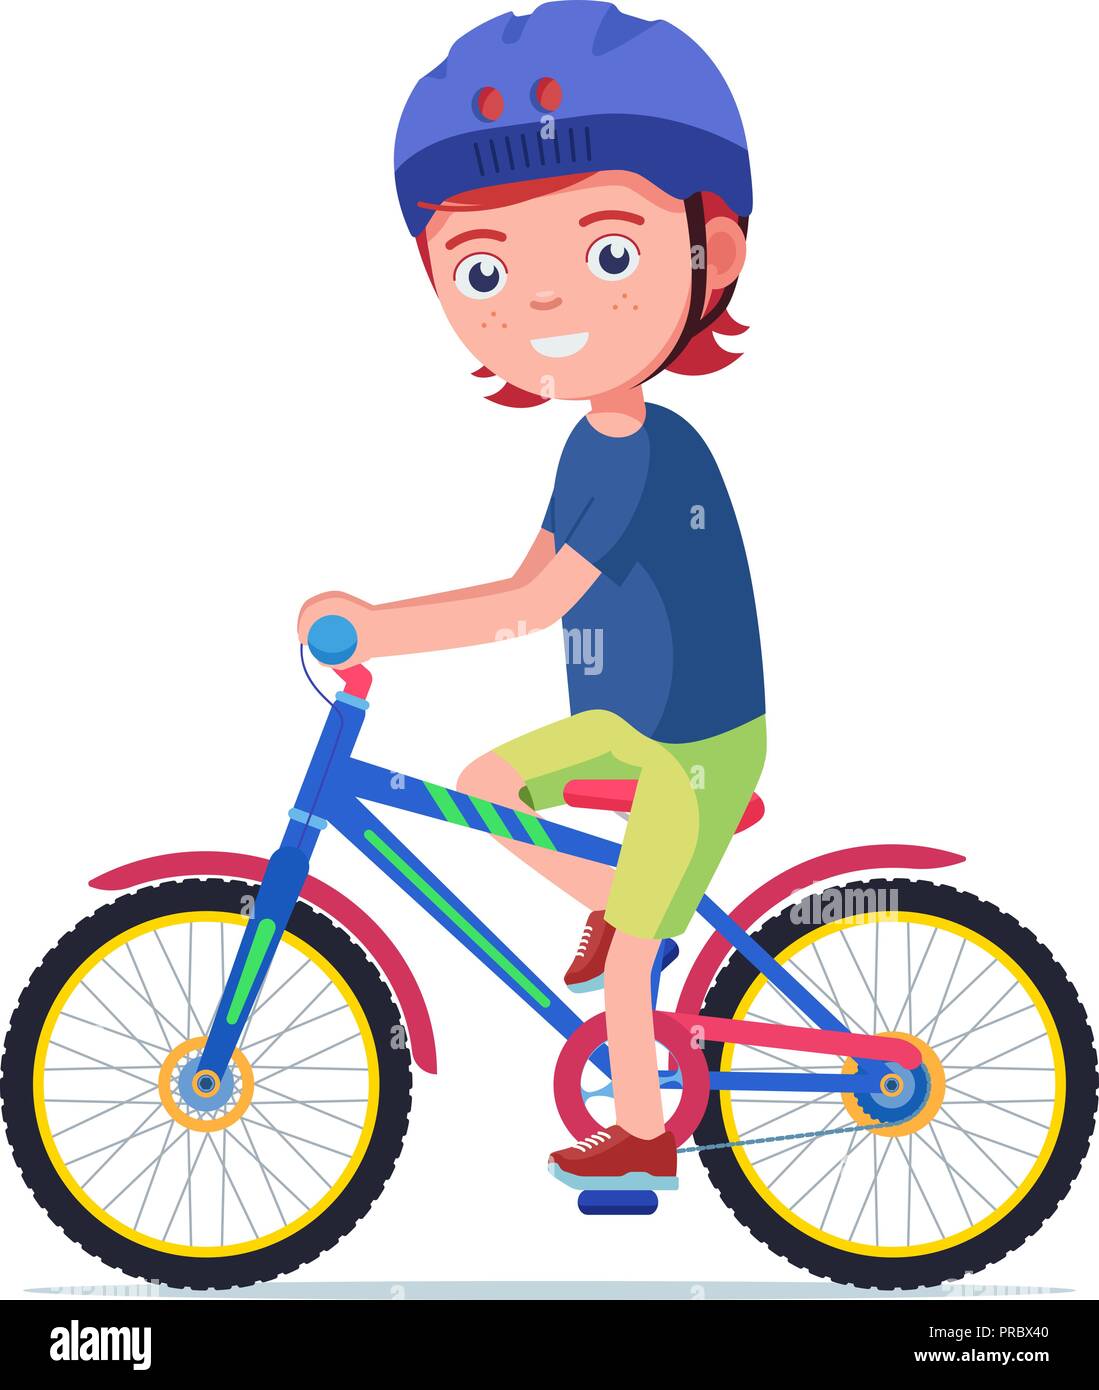 Junge reitet ein Fahrrad in einem Schutzhelm Stock Vektor